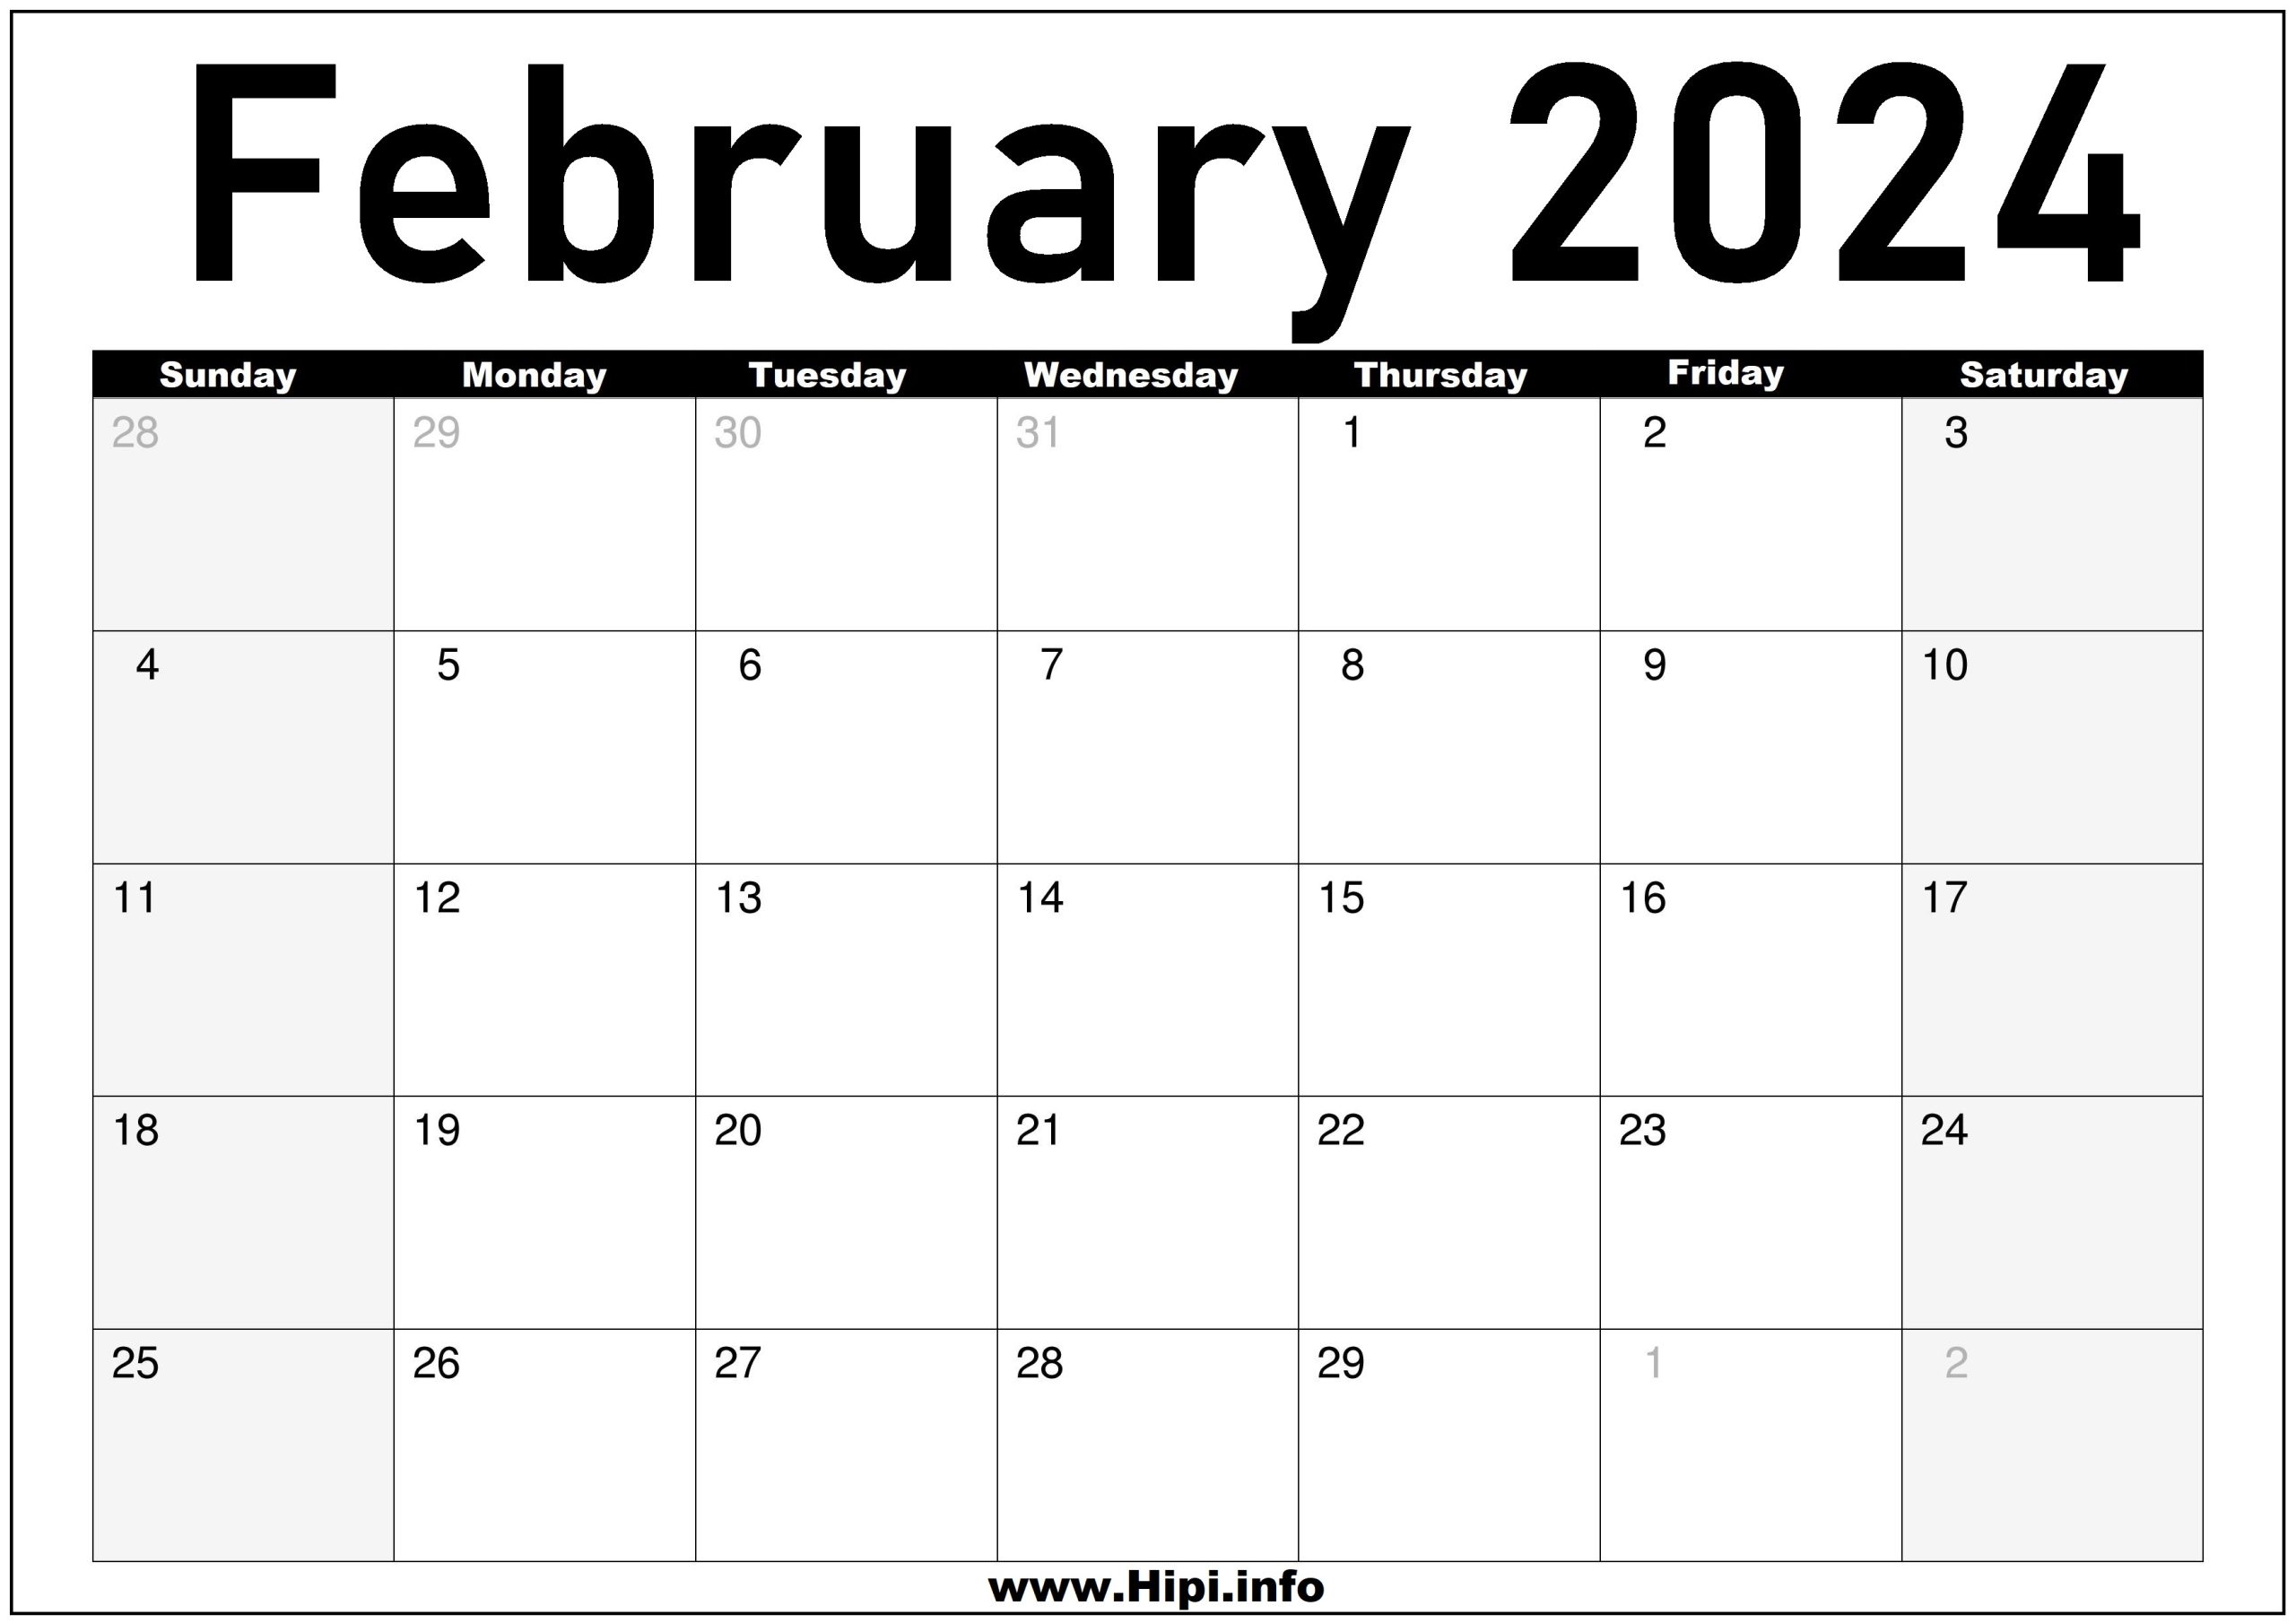 february-2024-monthly-calendar-hipi-info